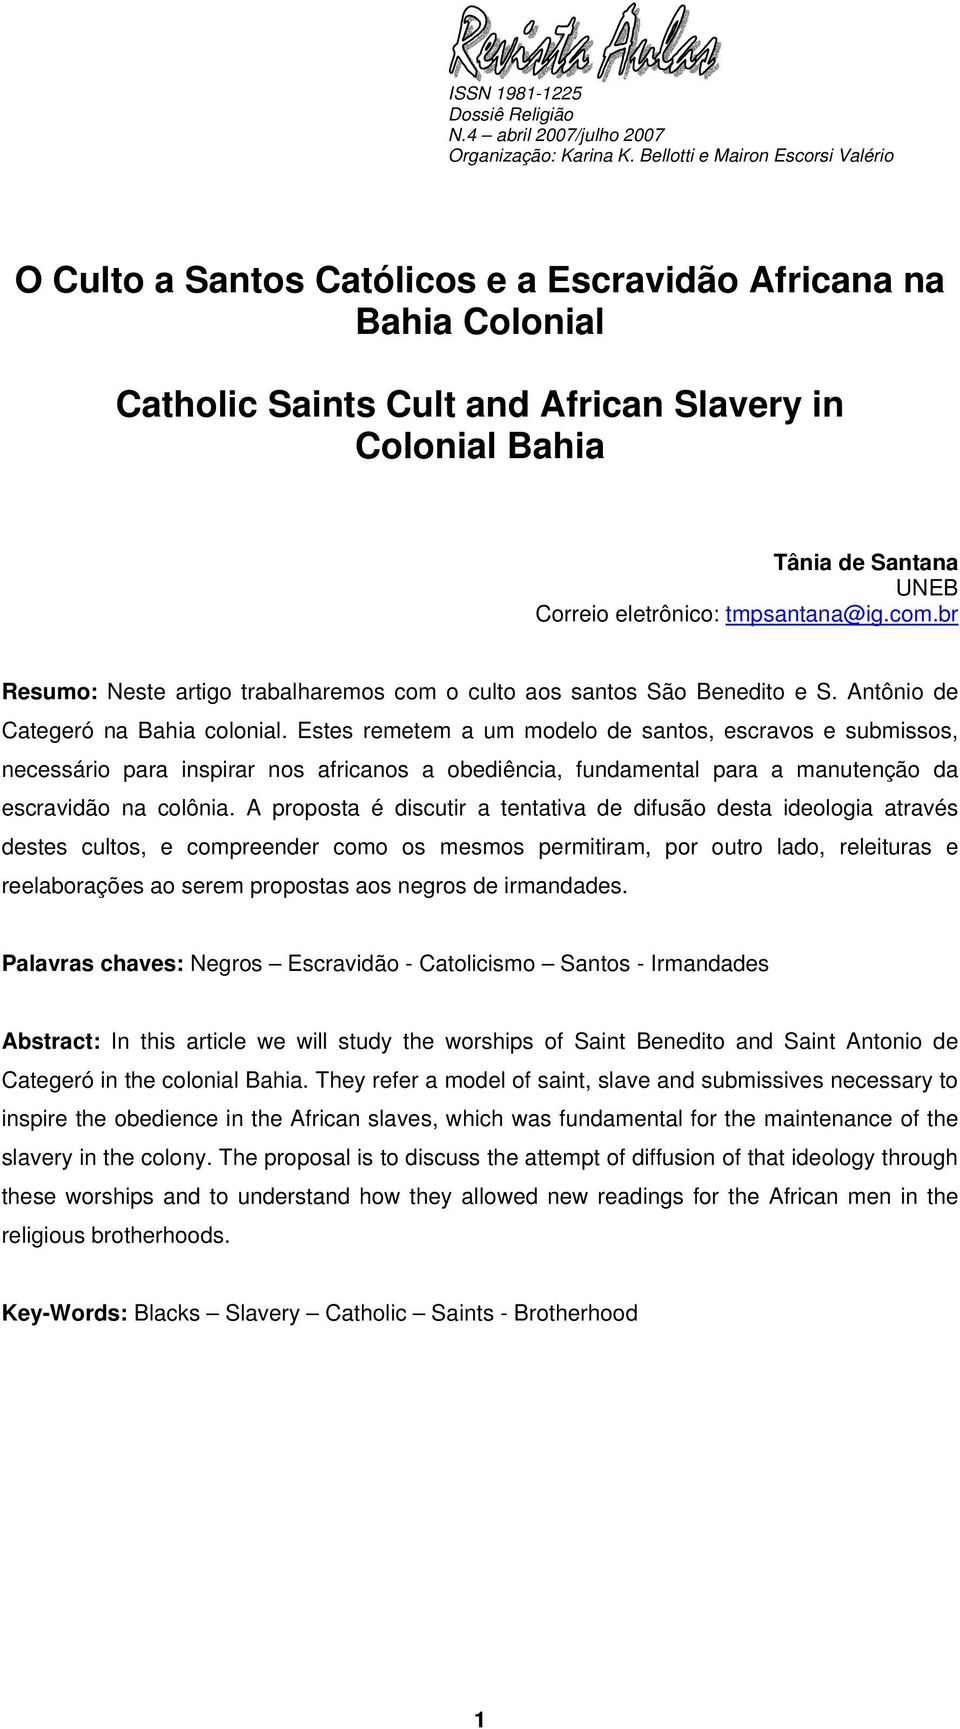 Estes remetem a um modelo de santos, escravos e submissos, necessário para inspirar nos africanos a obediência, fundamental para a manutenção da escravidão na colônia.